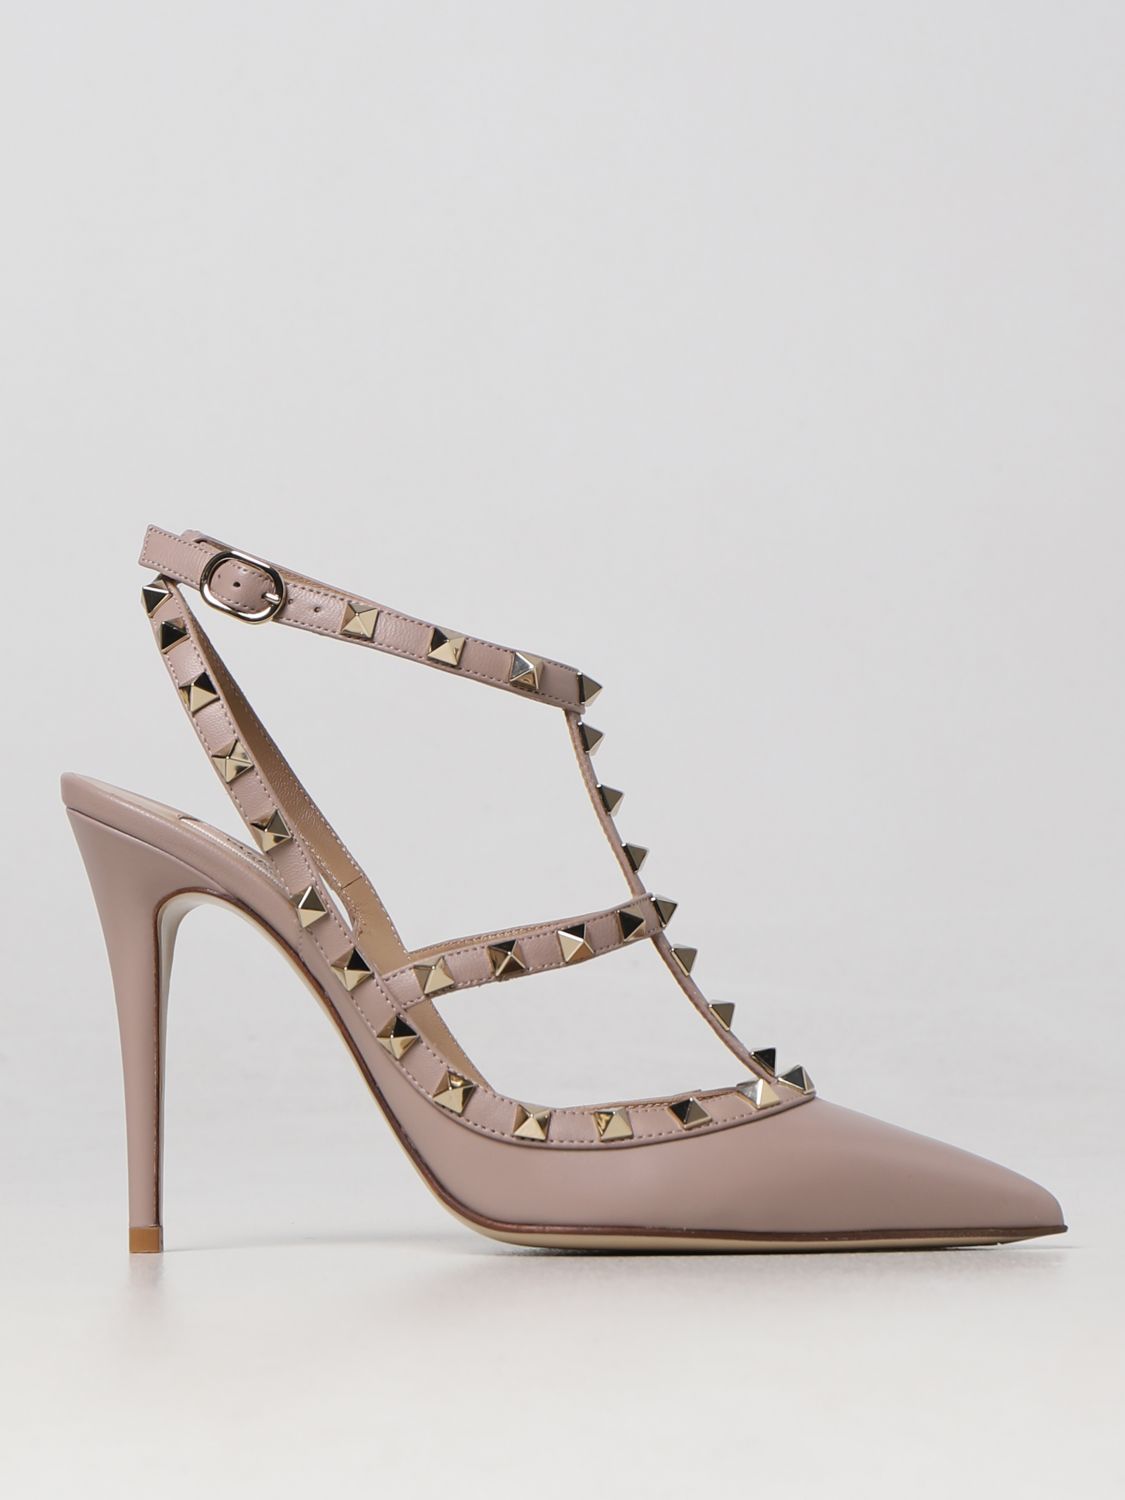 VALENTINO high shoes for women - Blush Pink | Valentino Garavani high heel 2W2S0393VOD online on GIGLIO.COM